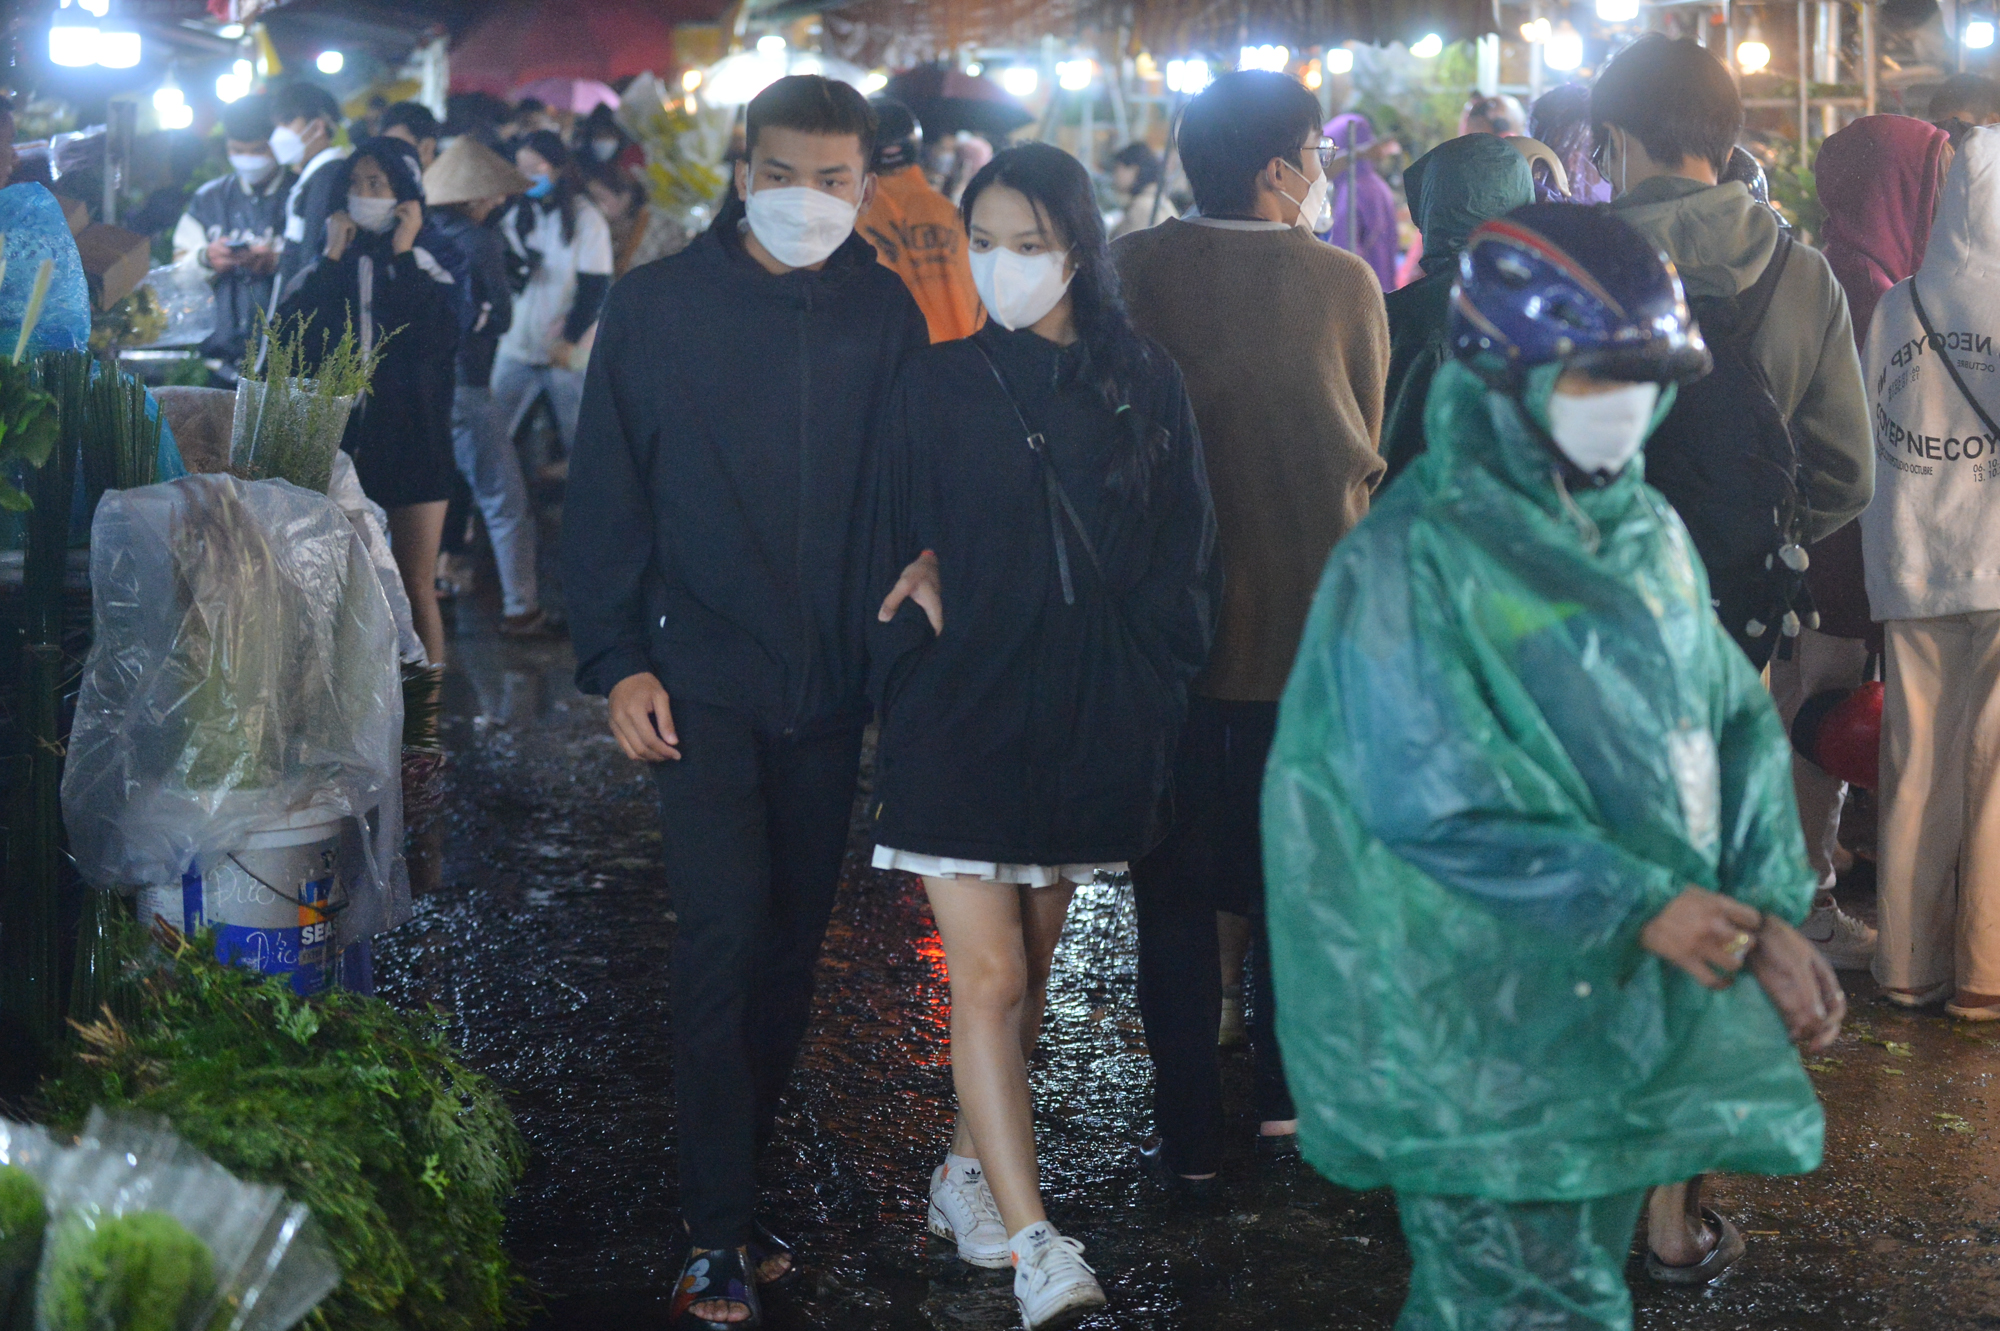 Ảnh: Mặc áo mưa, đội ô đi chợ hoa đêm lớn nhất miền Bắc trước ngày Phụ nữ Việt Nam 20/10, nhiều người co ro vì lạnh - Ảnh 4.